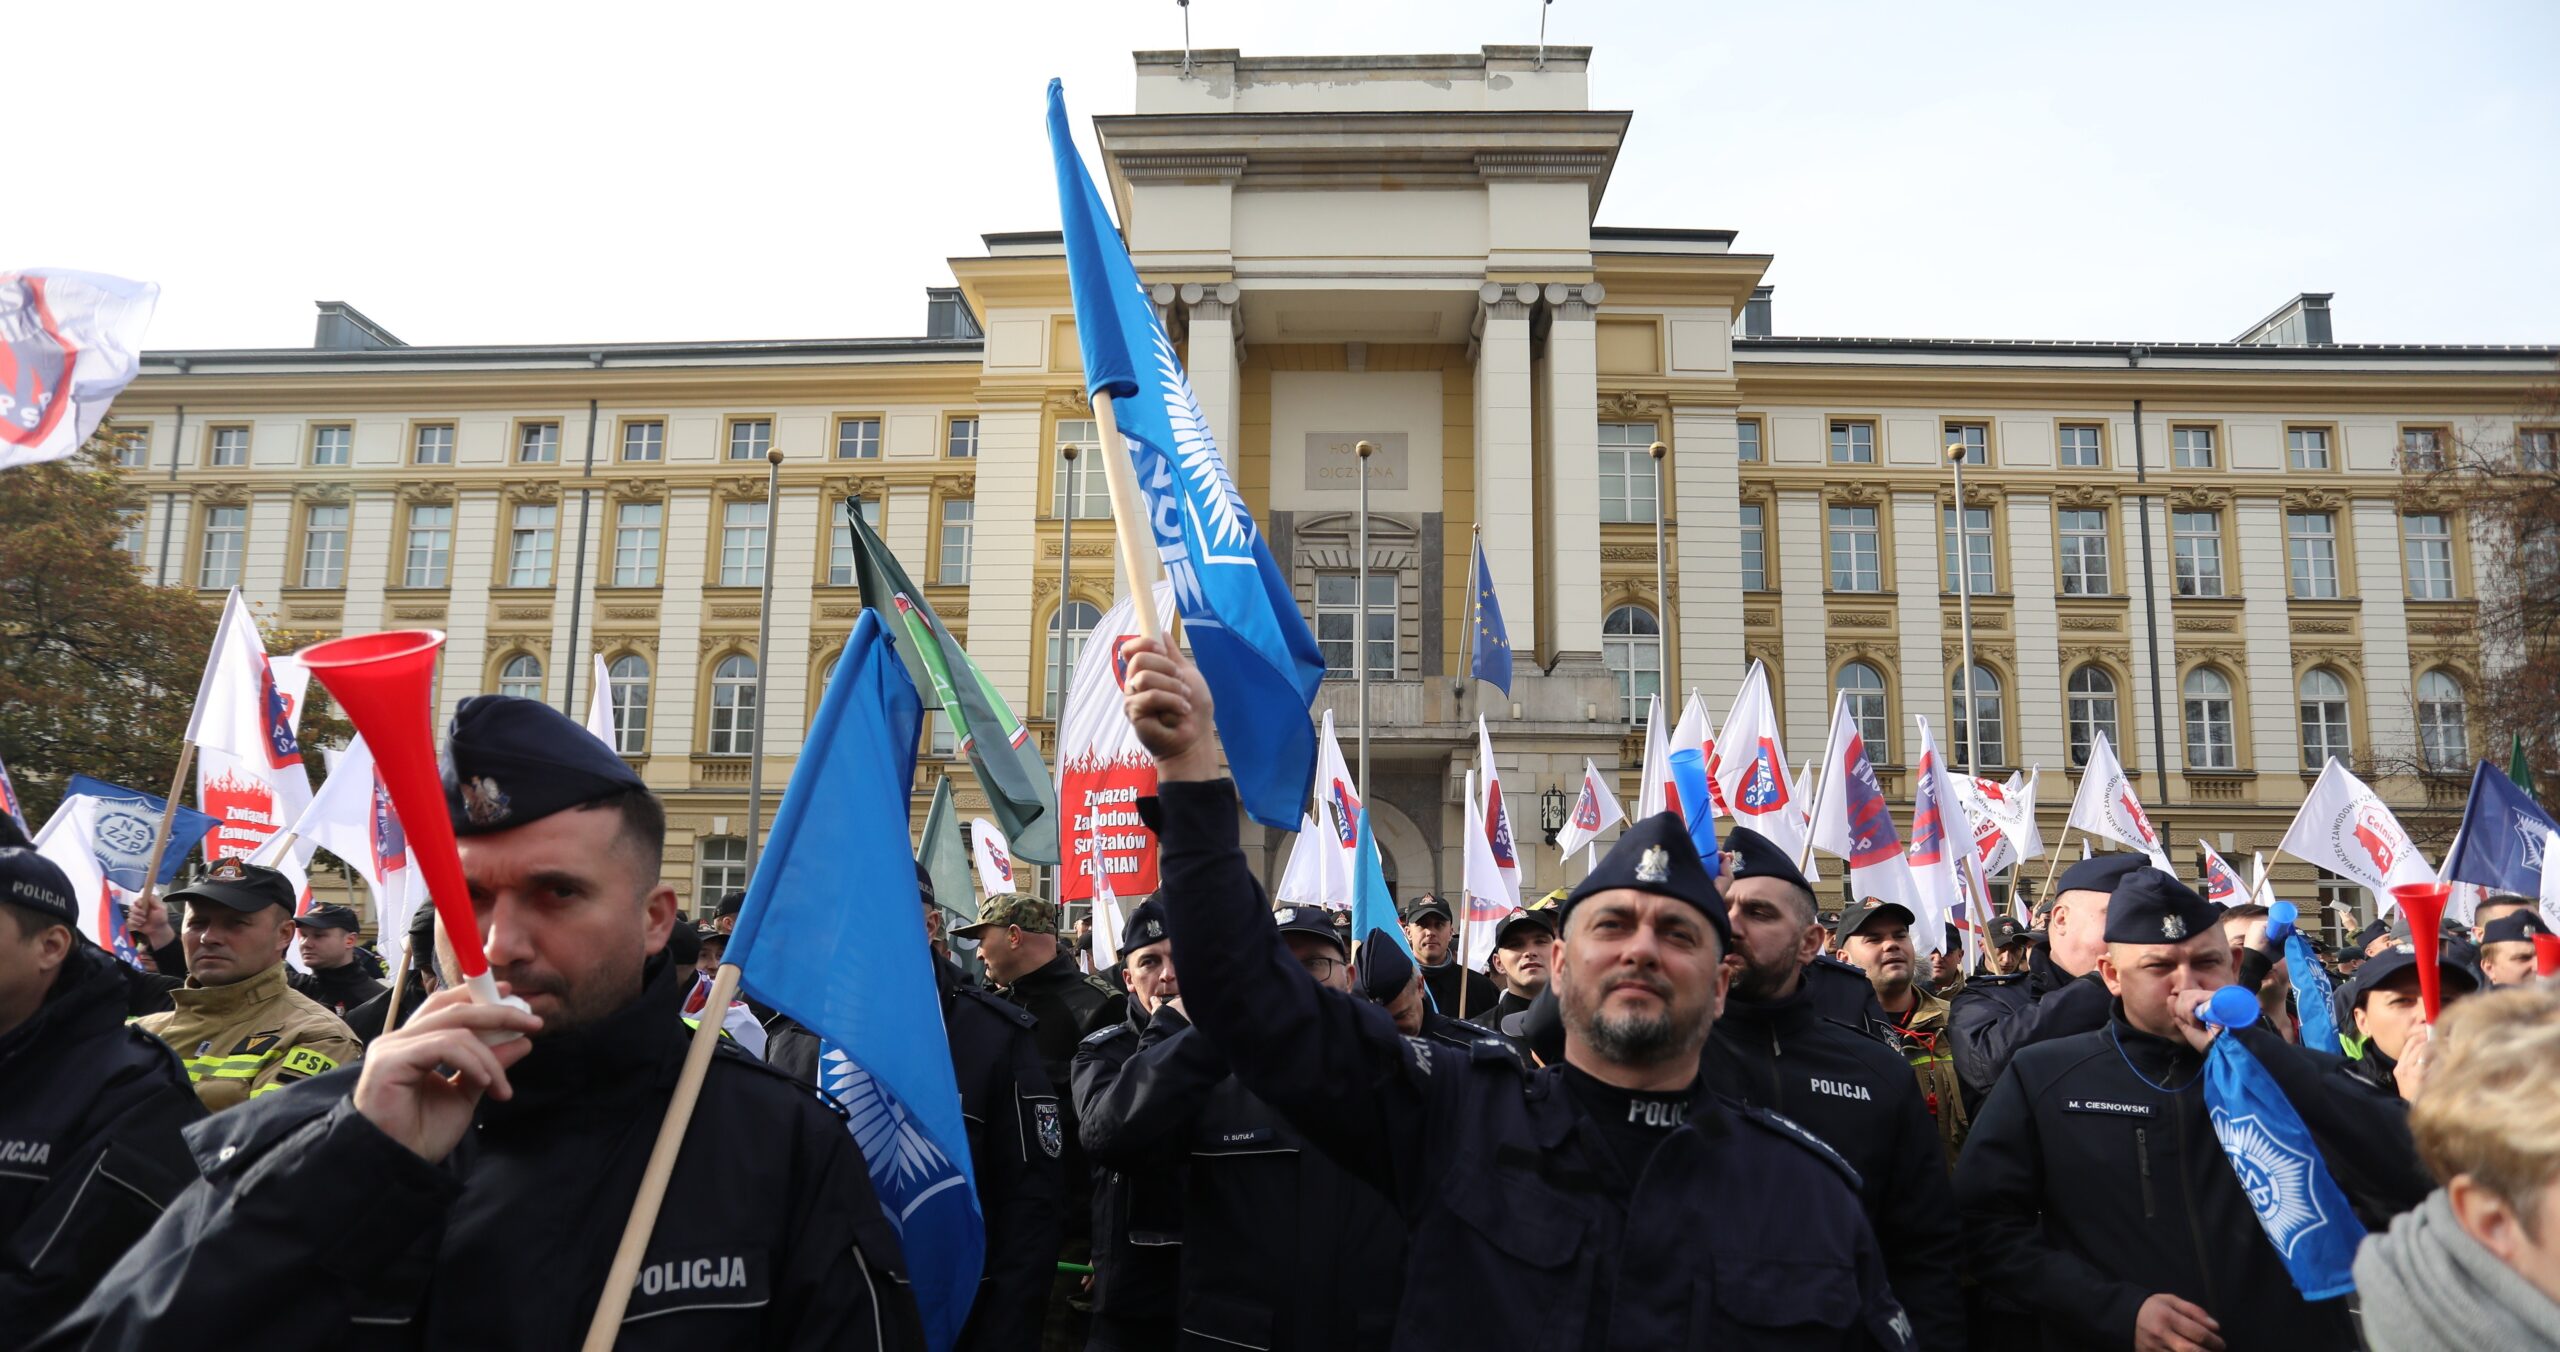 Policja protestowała w Warszawie, domagając się podwyżki